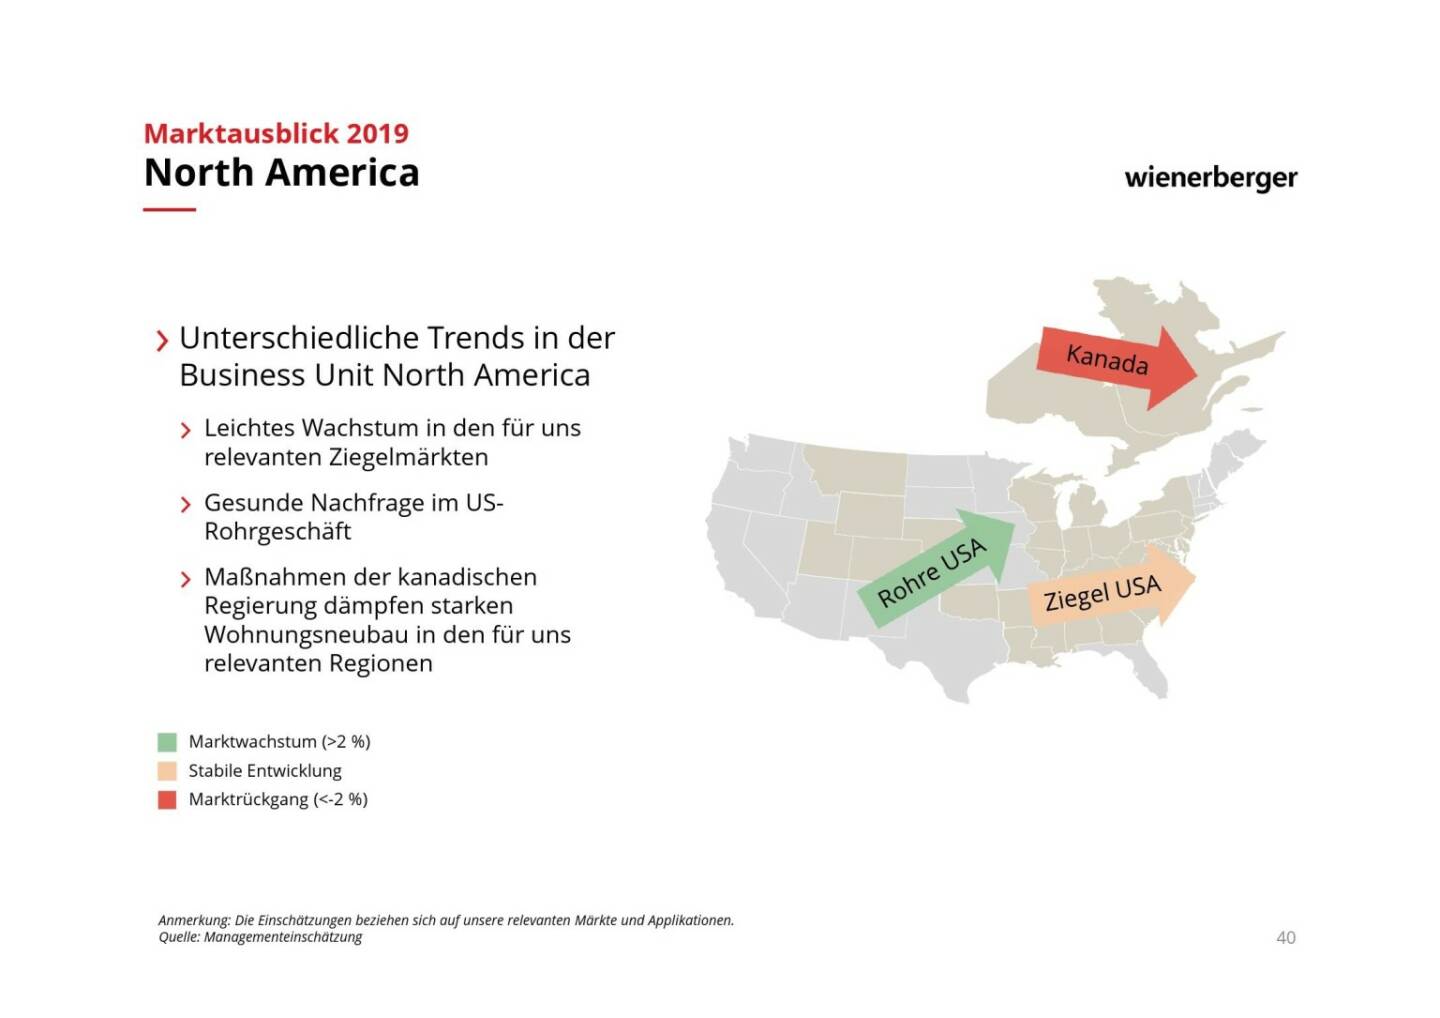 Wienerberger - North America